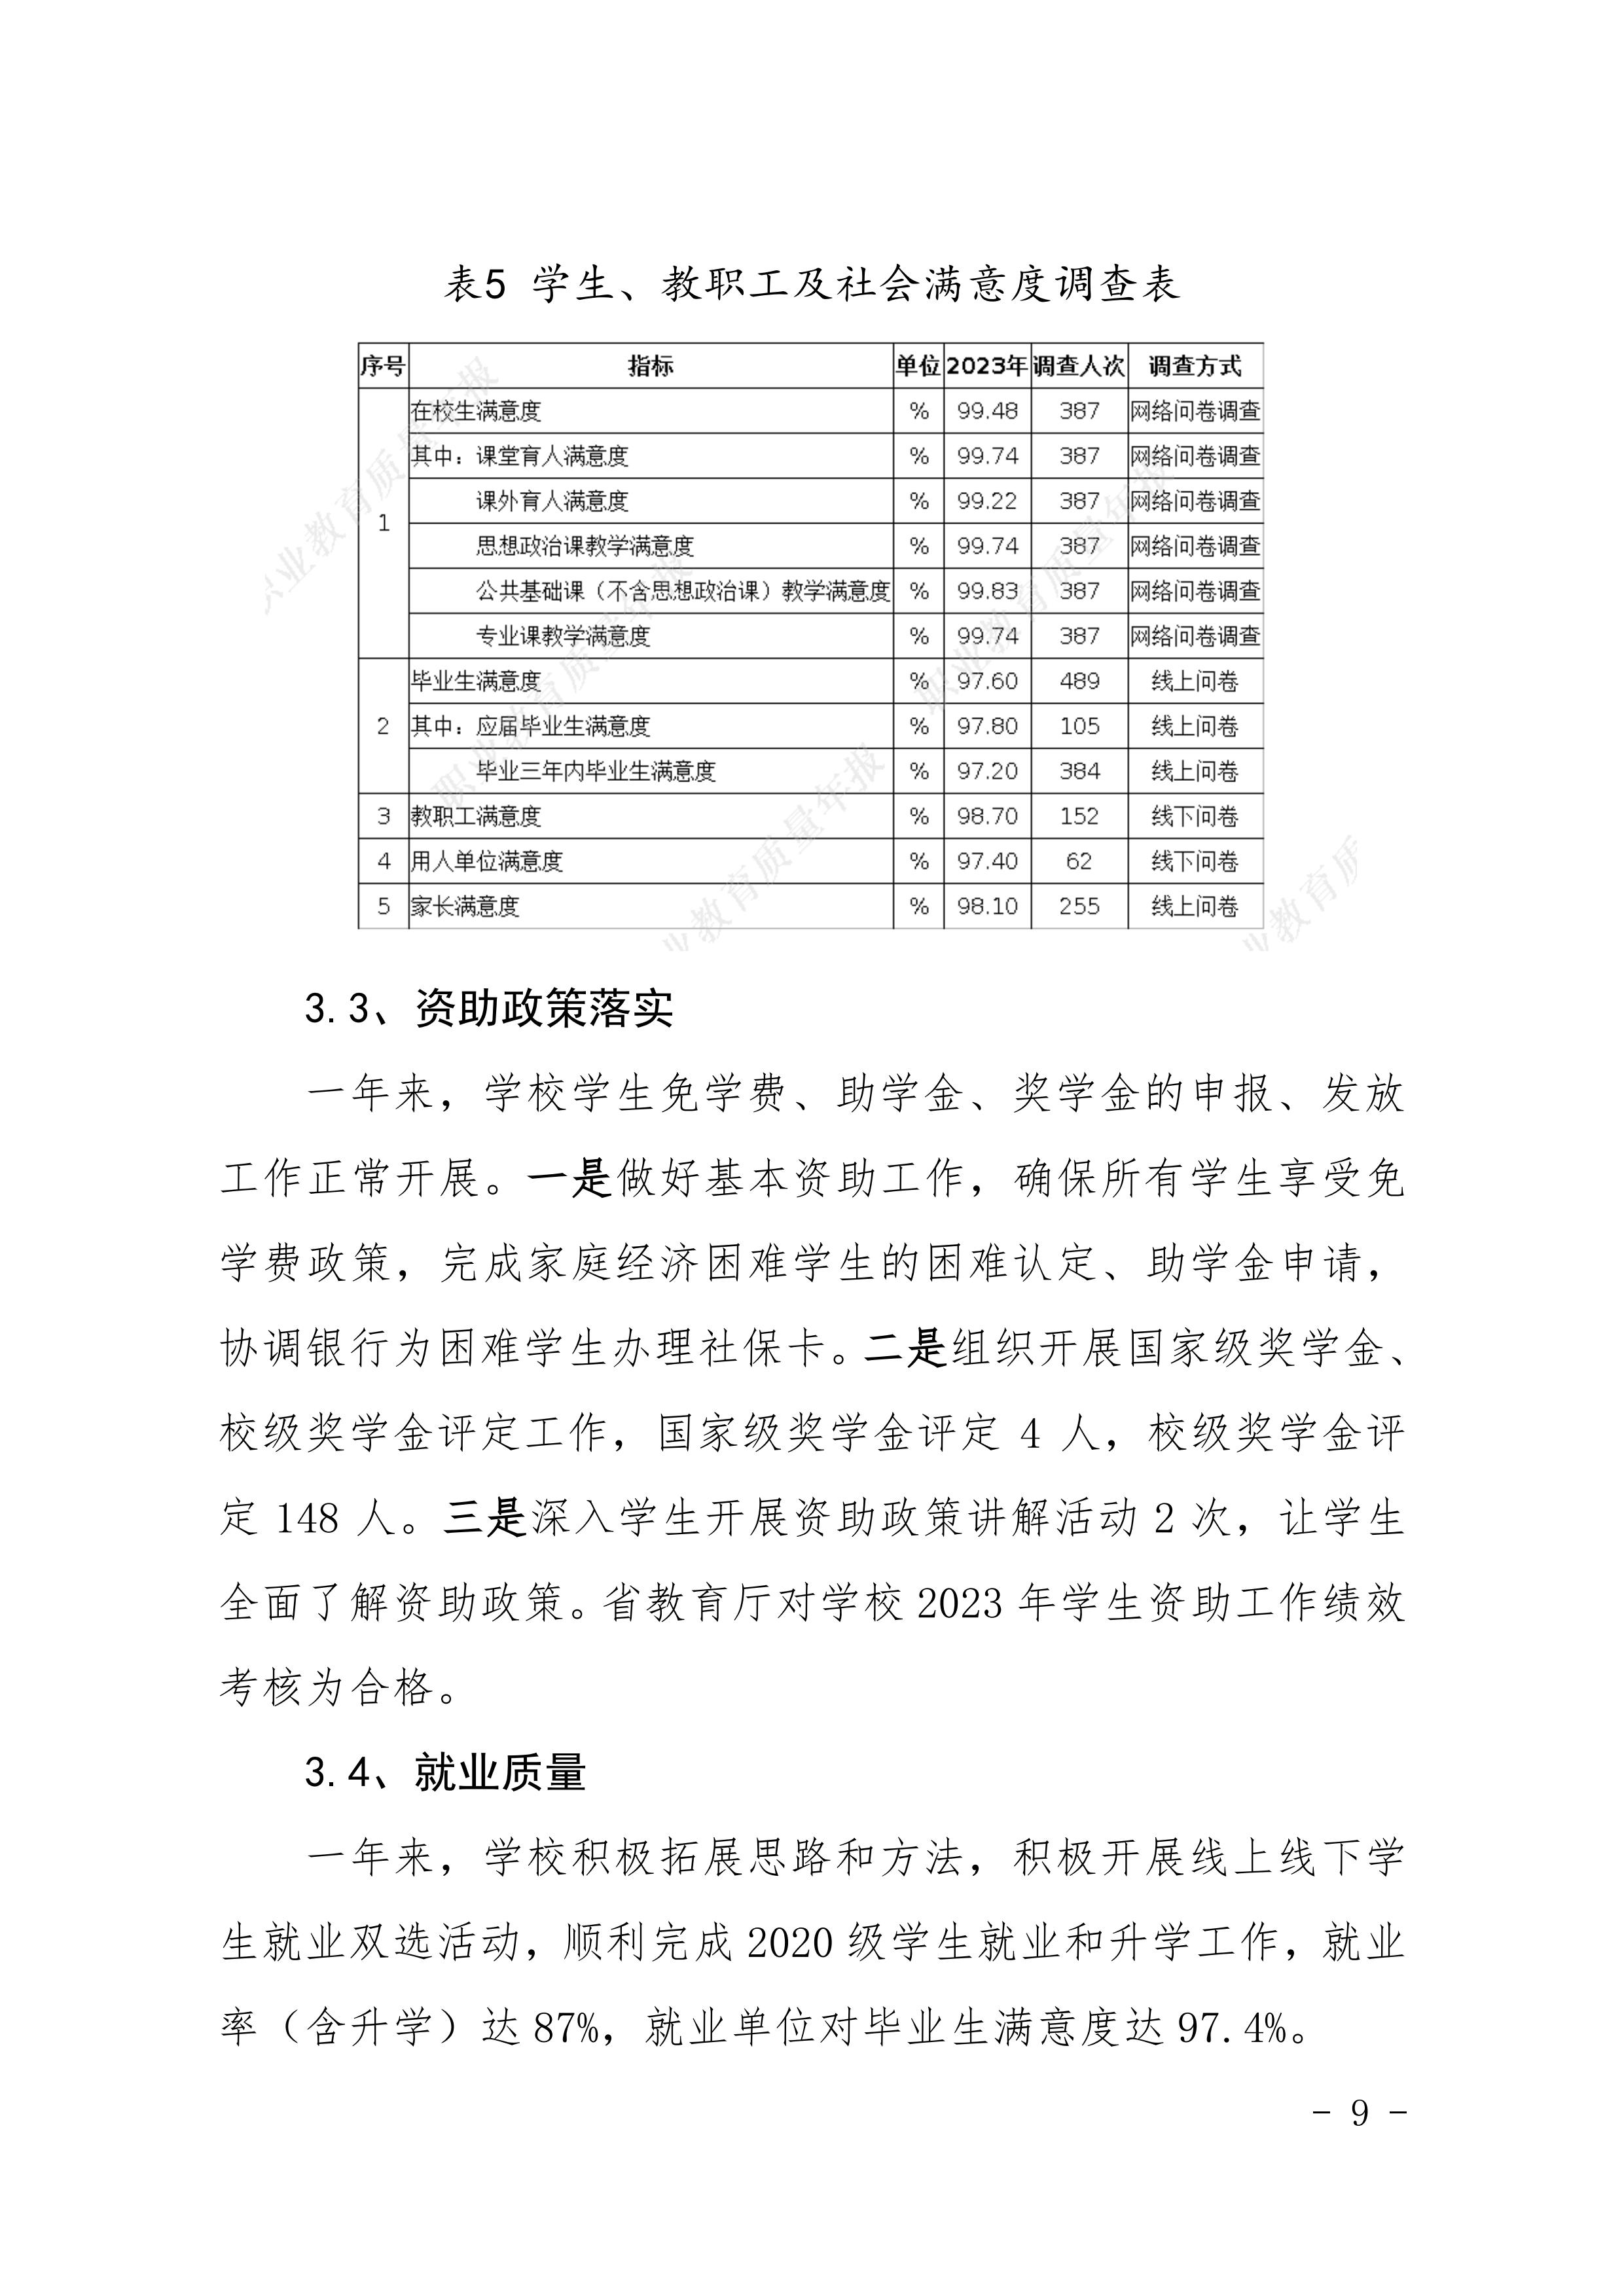 河南省民政学校职业教育质量报告（2023年度）发布版_12.jpg